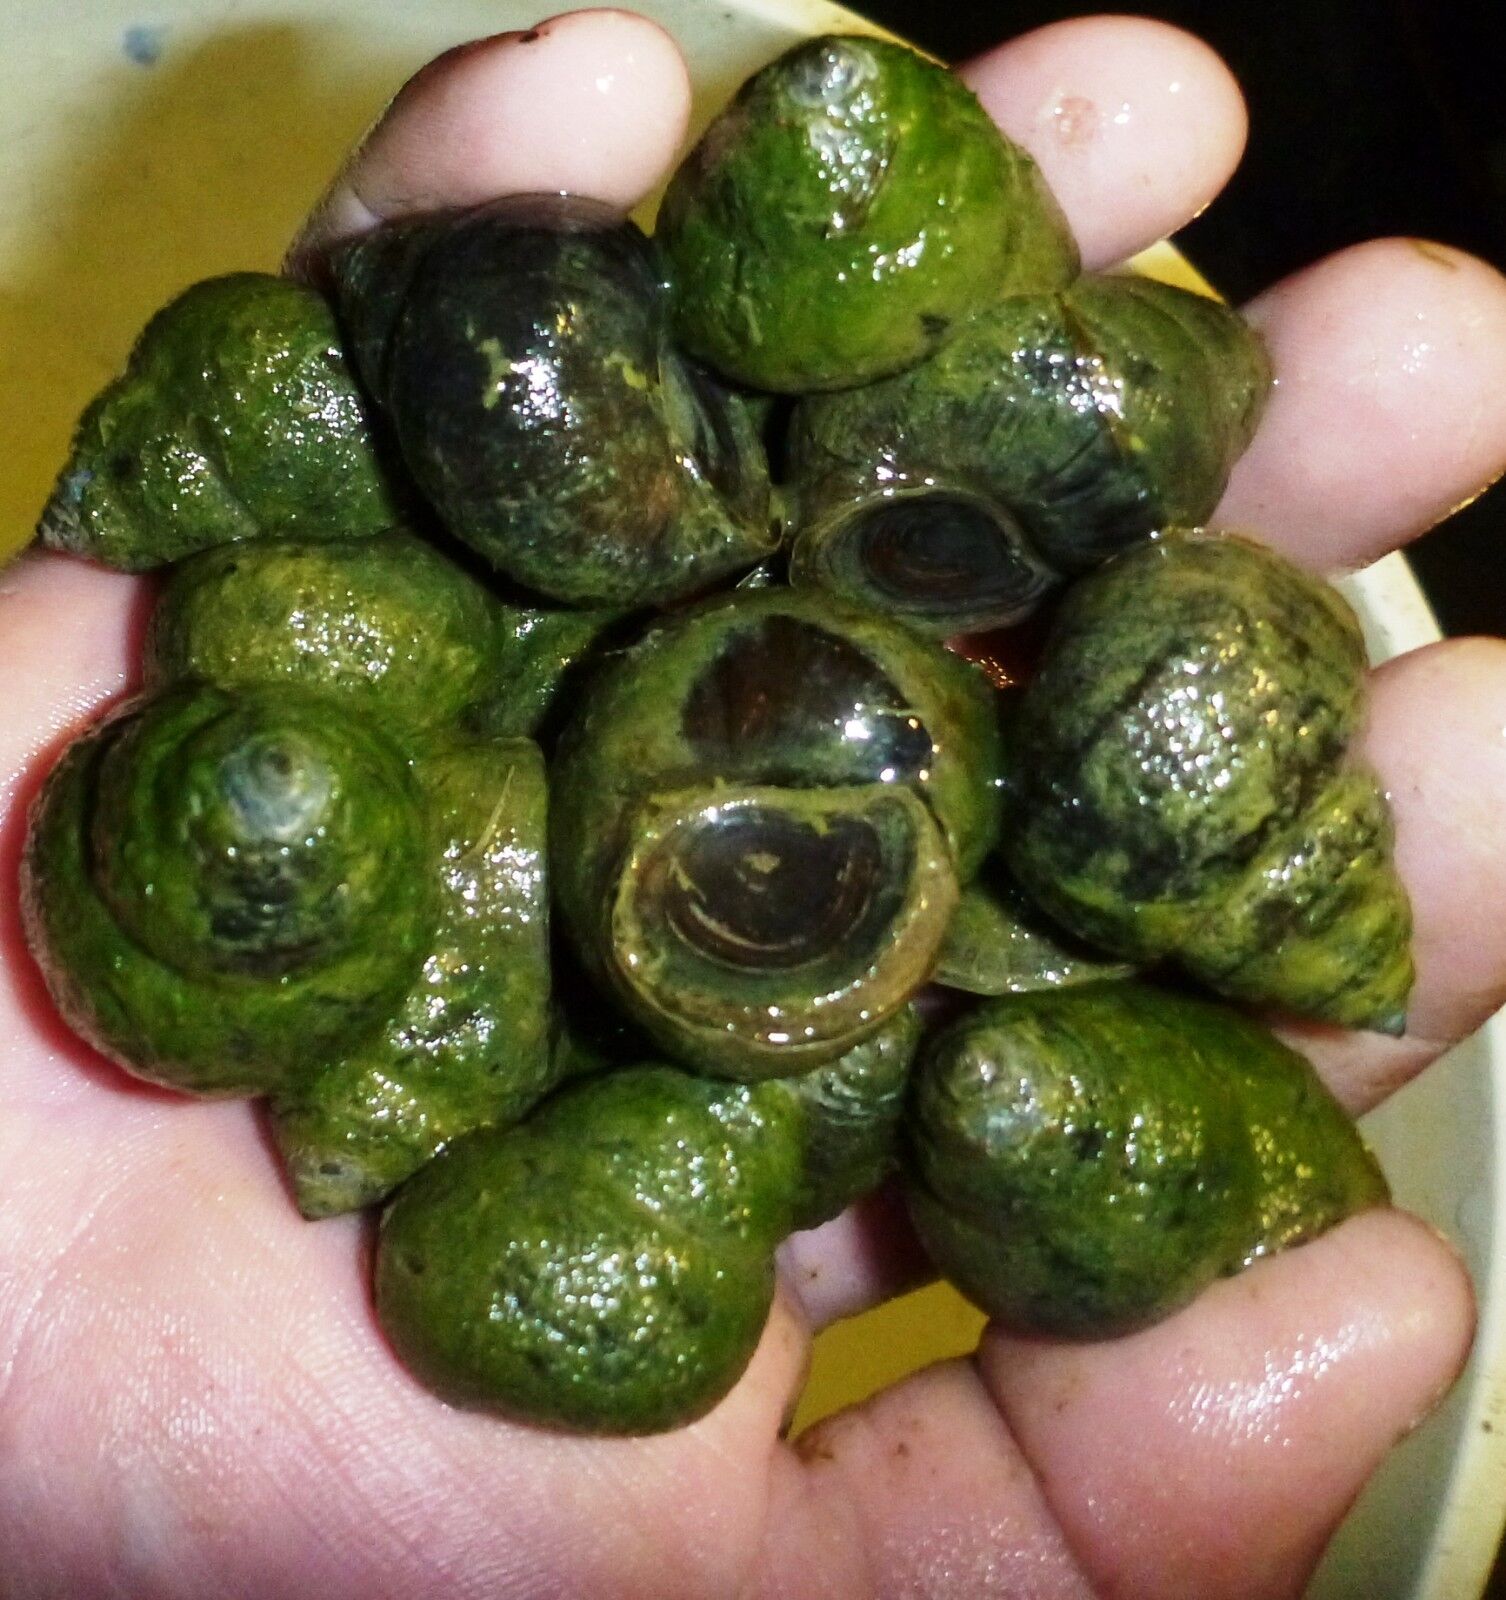 50-Lot Japanese Trapdoor snails algae eaters for koi pond garden pkf